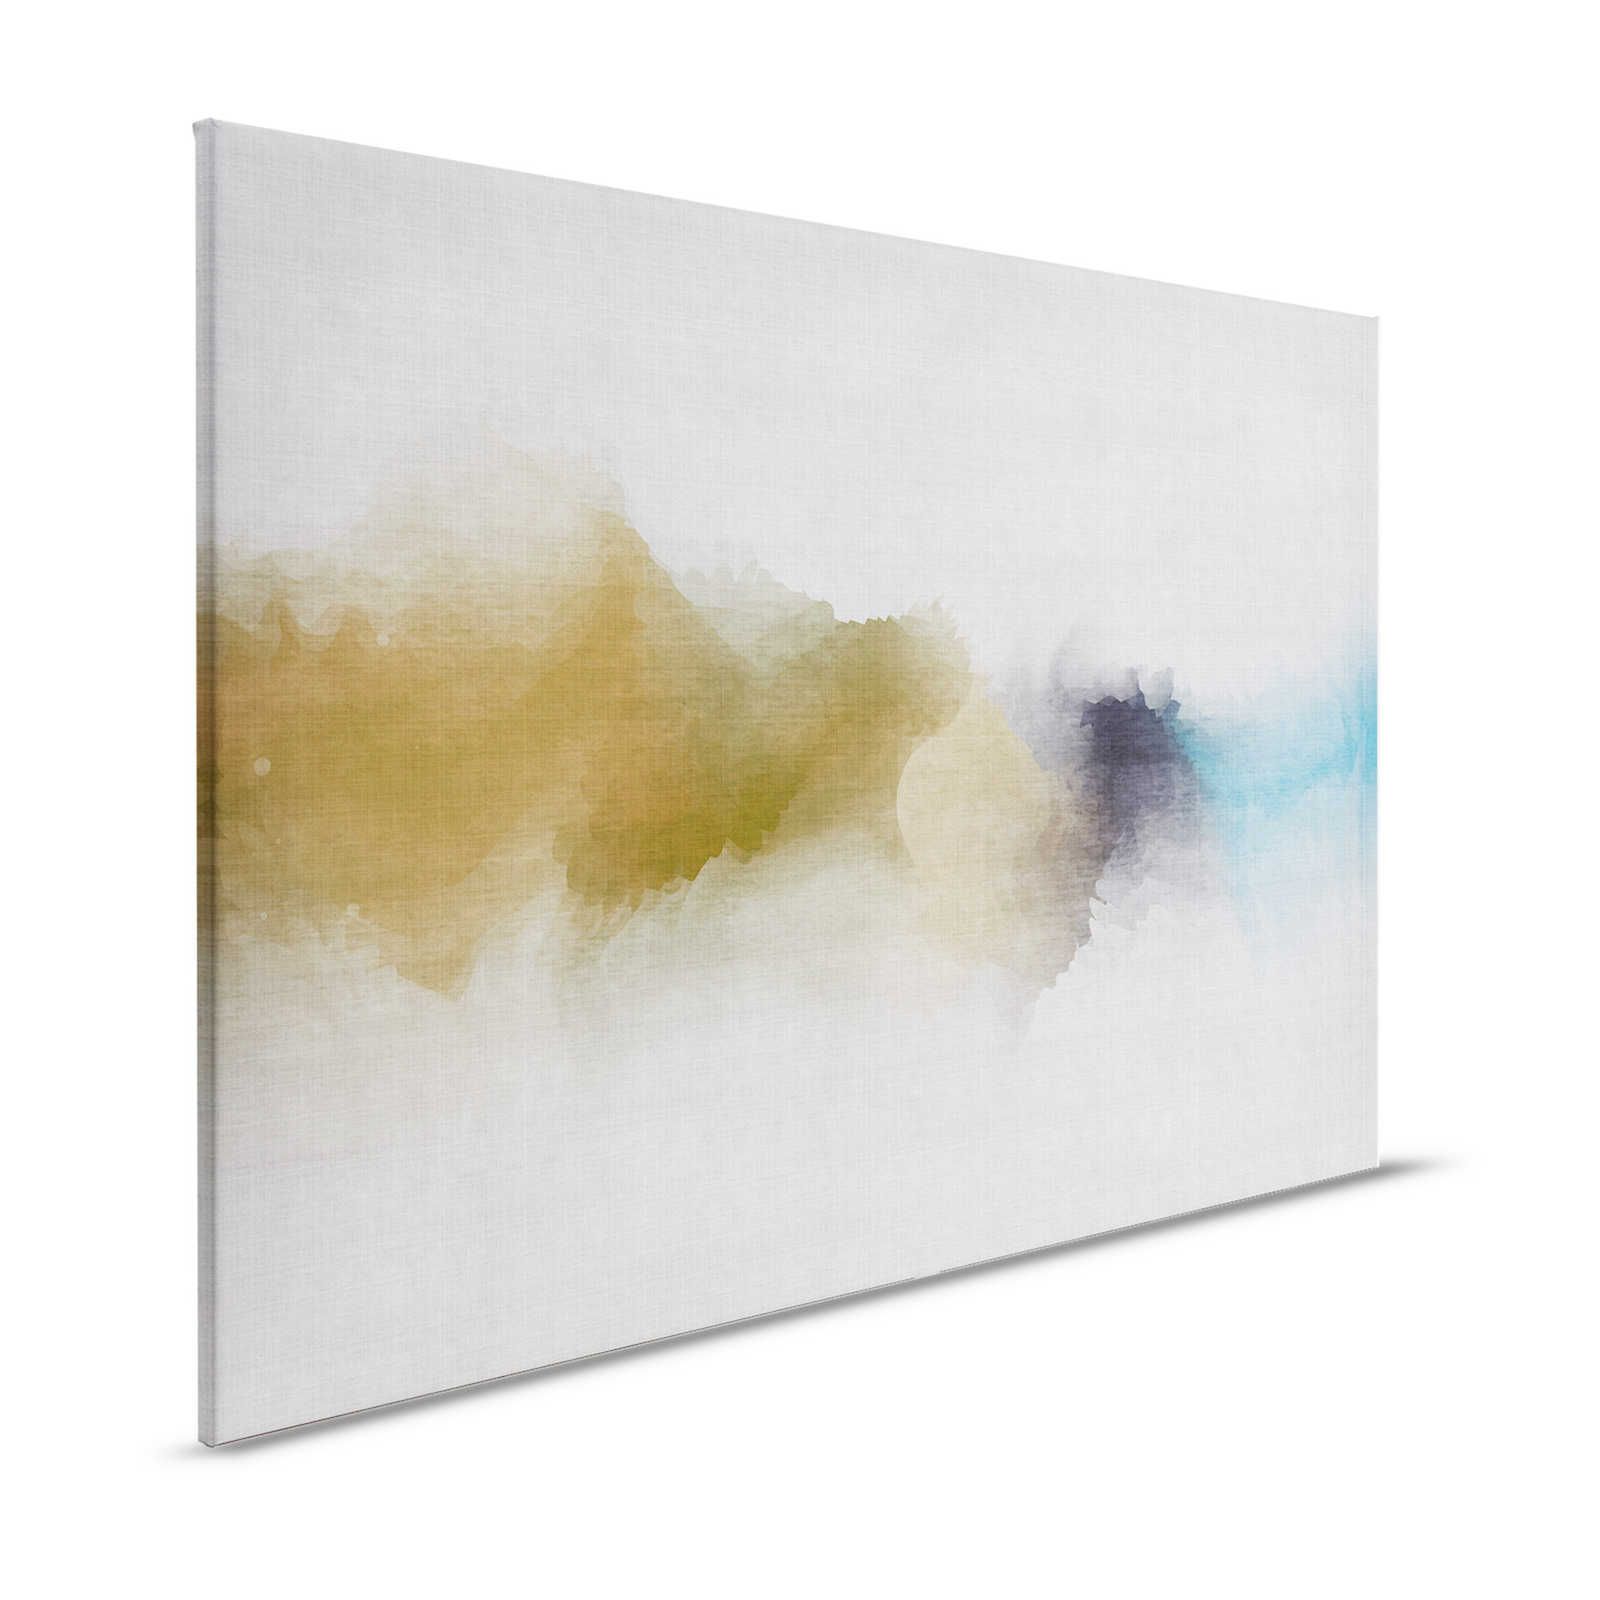 Daydream 3 - Leinwandbild wolkiges Aquarell-Muster- Naturleinen Optik – 1,20 m x 0,80 m
